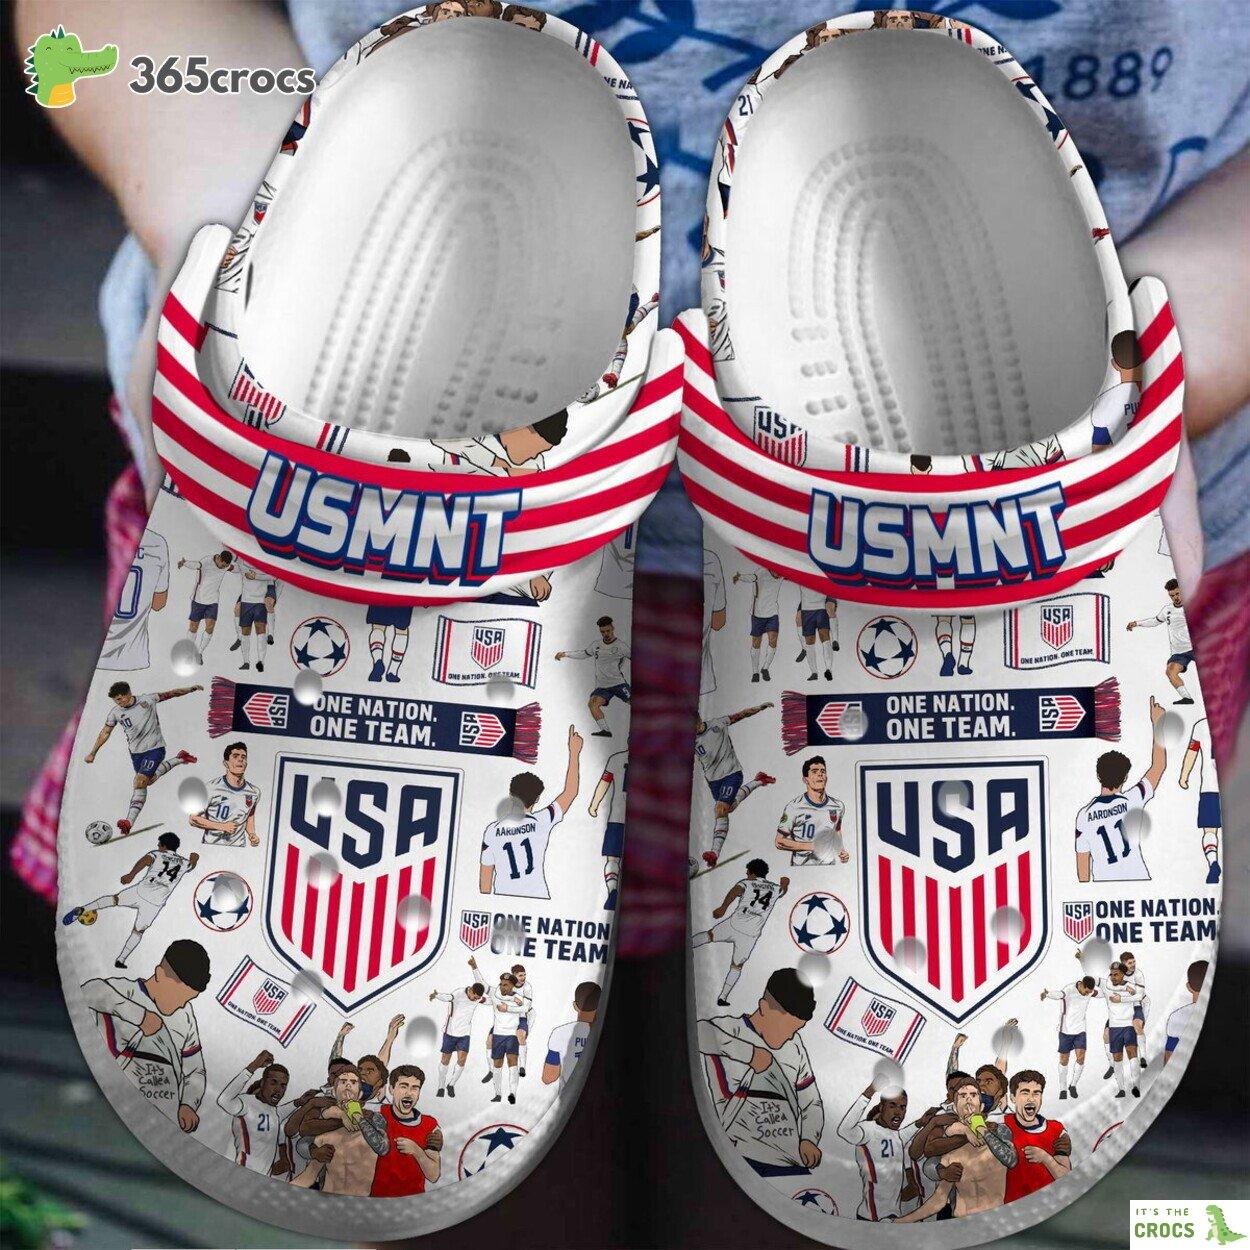 US Men’s National Soccer Team Premium Crocs Clogs Shoes Comfortable